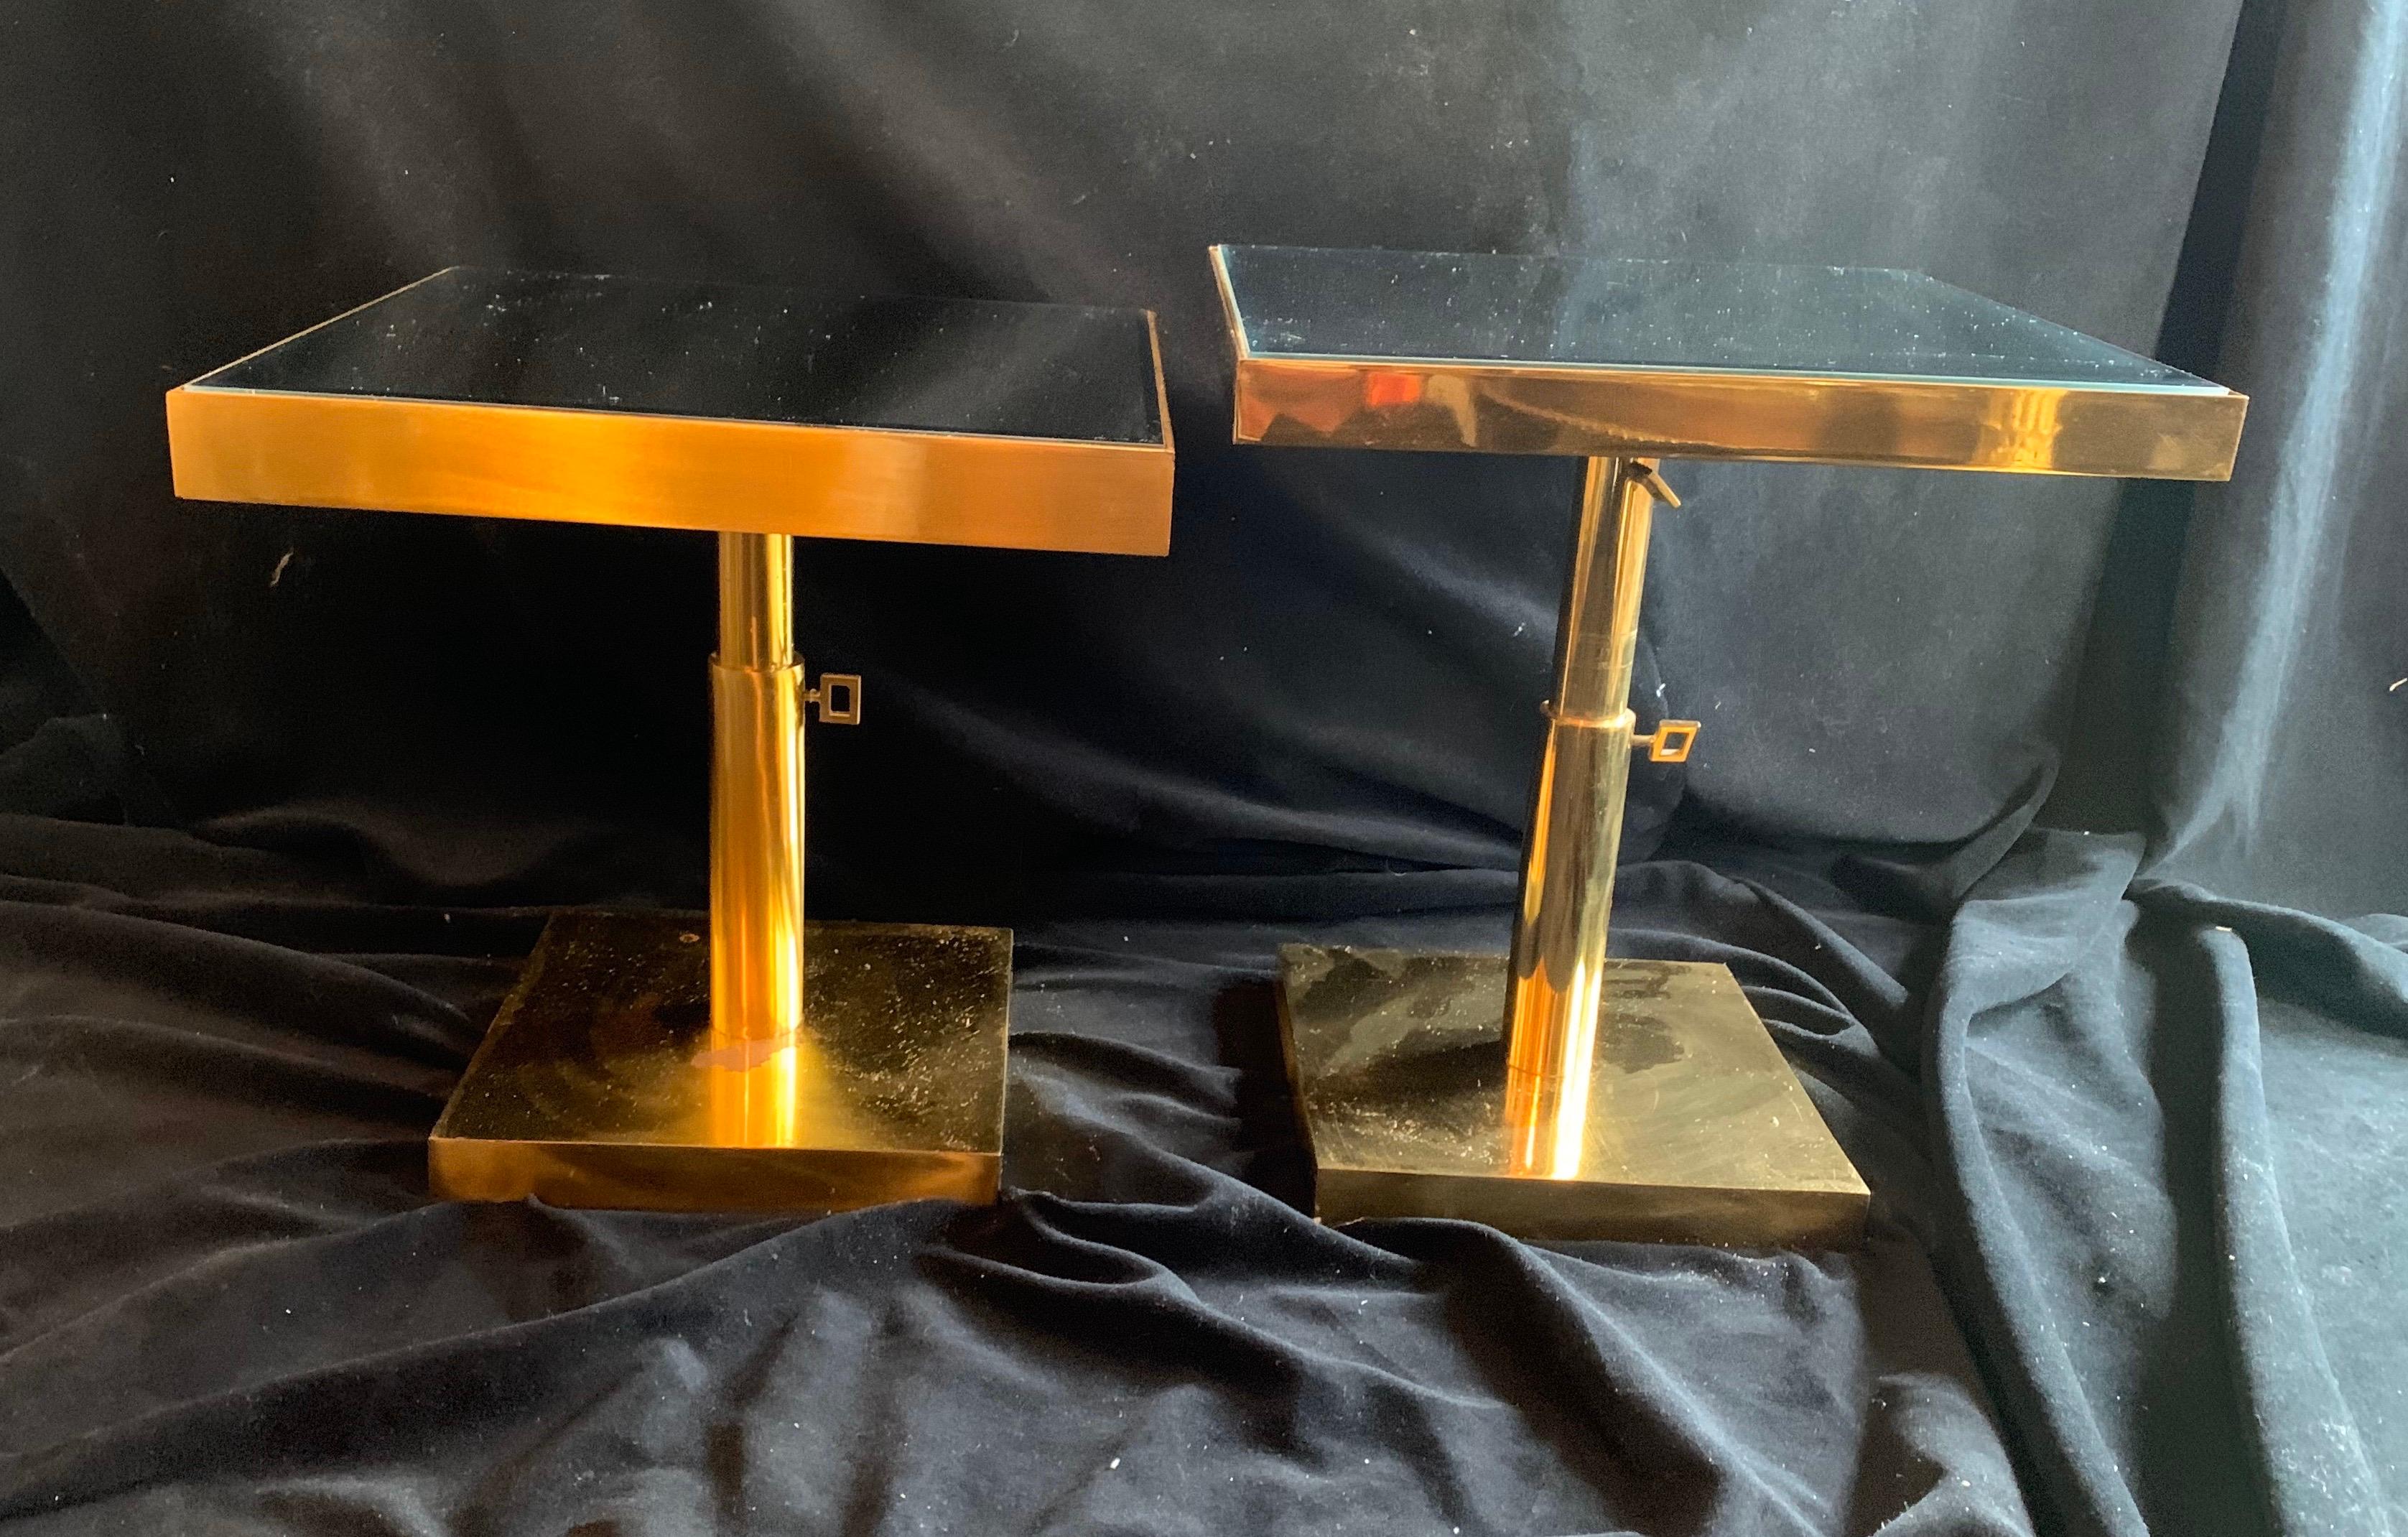 Magnifique paire de tables d'appoint carrées télescopiques en bronze et miroir biseauté, de style moderne du milieu du siècle. La hauteur est réglable par deux boutons.
Acheté à la salle d'exposition de Lorin Marsh à New York.